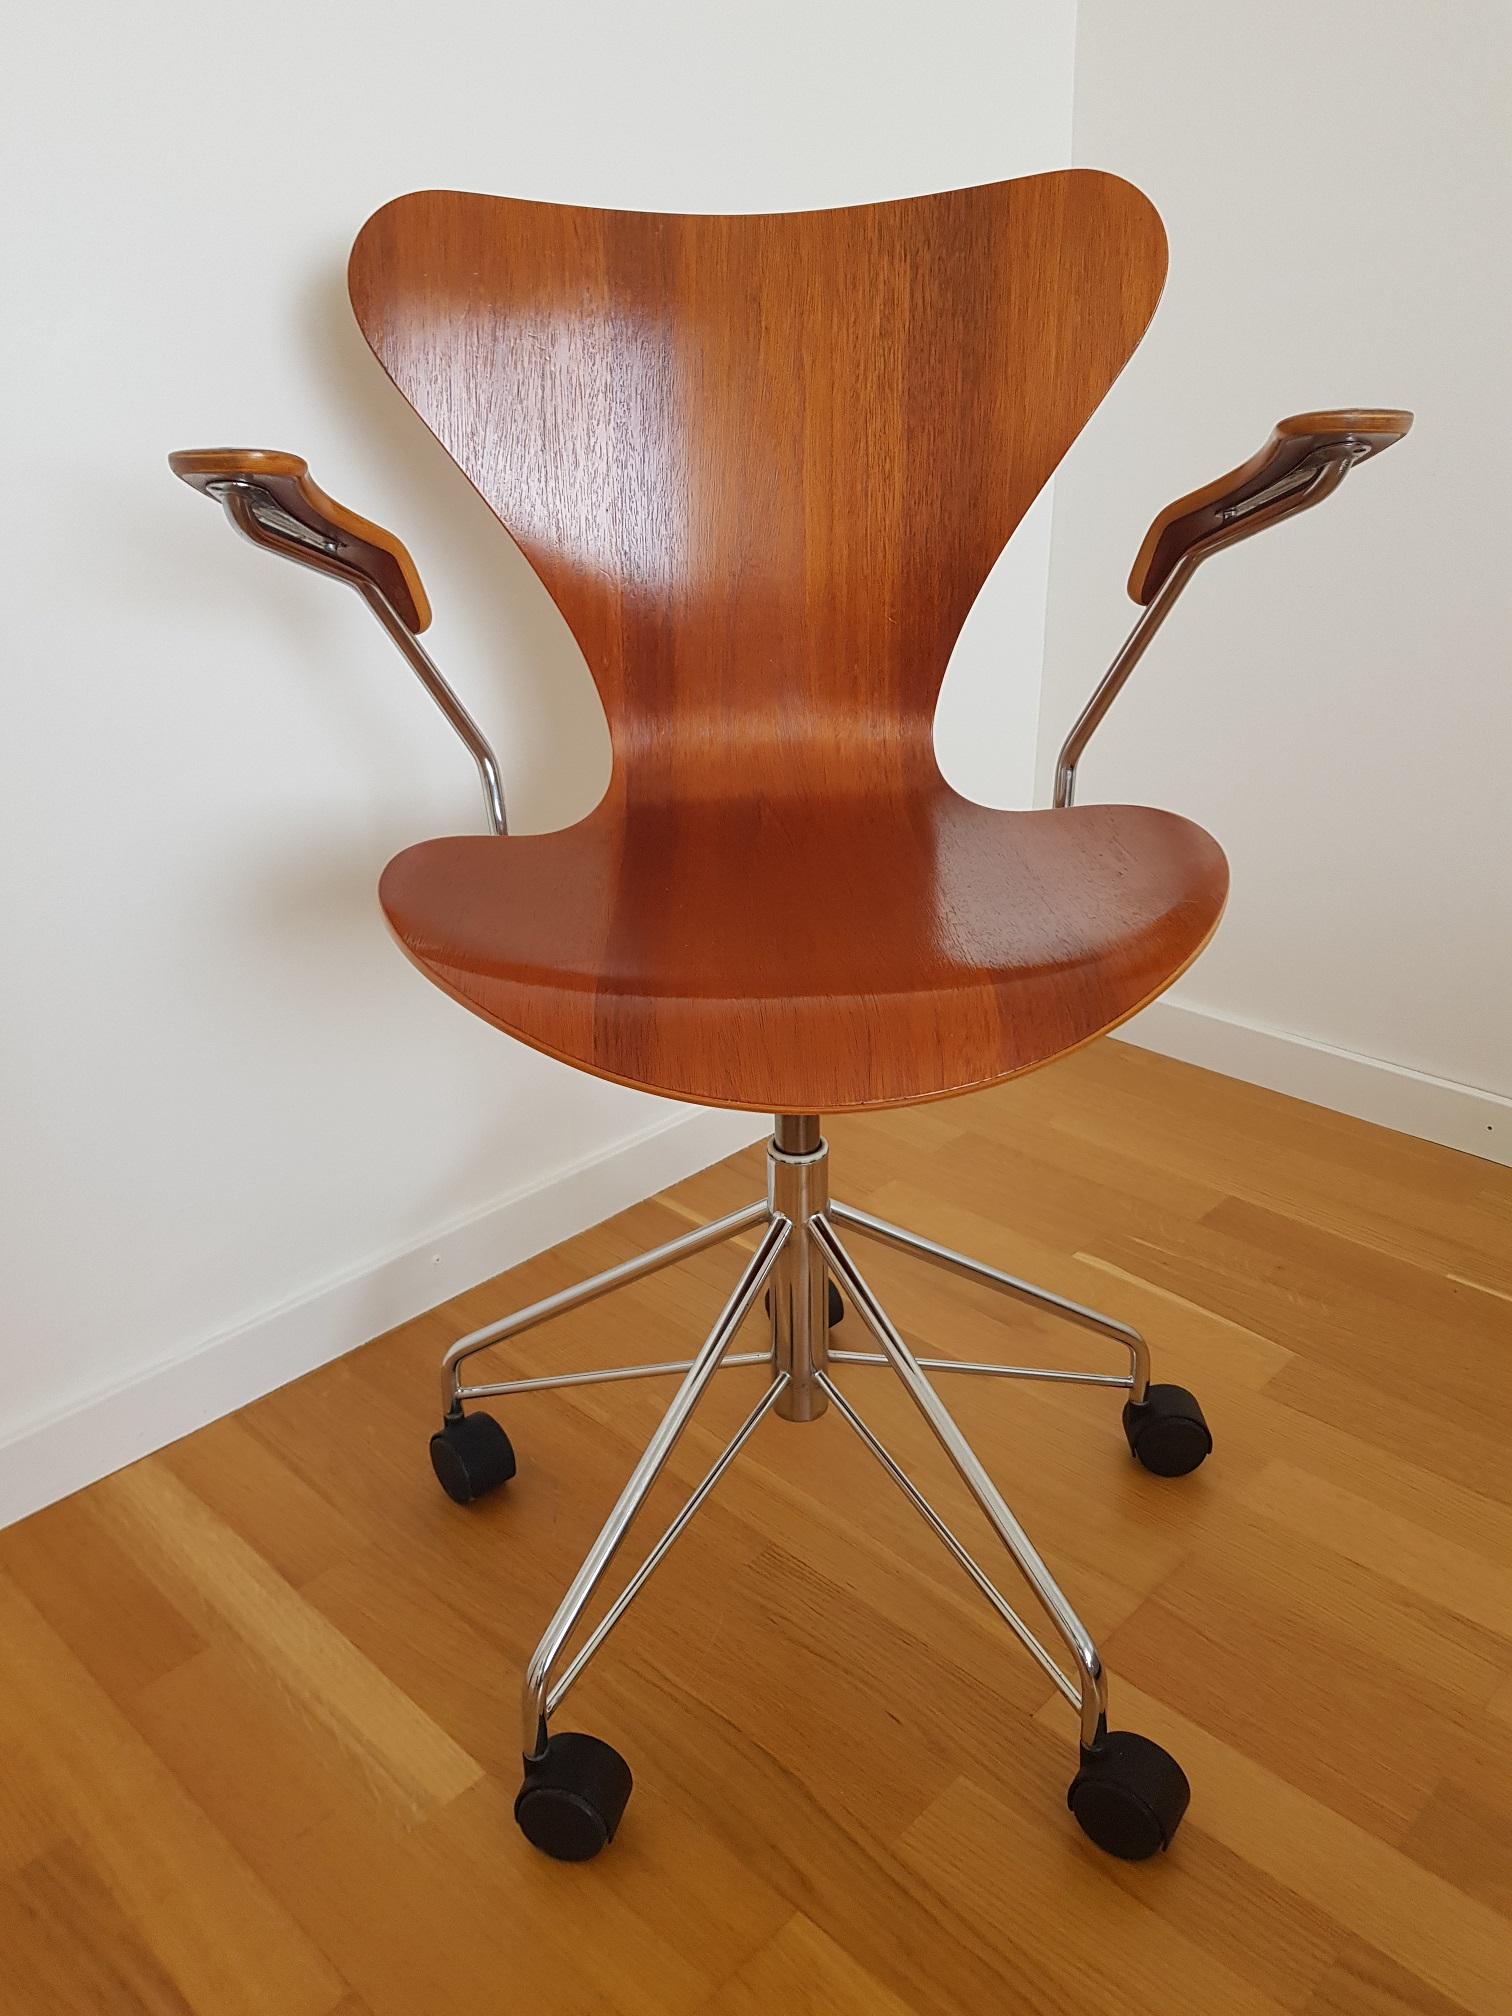 Scandinavian Modern Series 7 Teak Desk Chair Model 3217 by Arne Jacobsen for Fritz Hansen